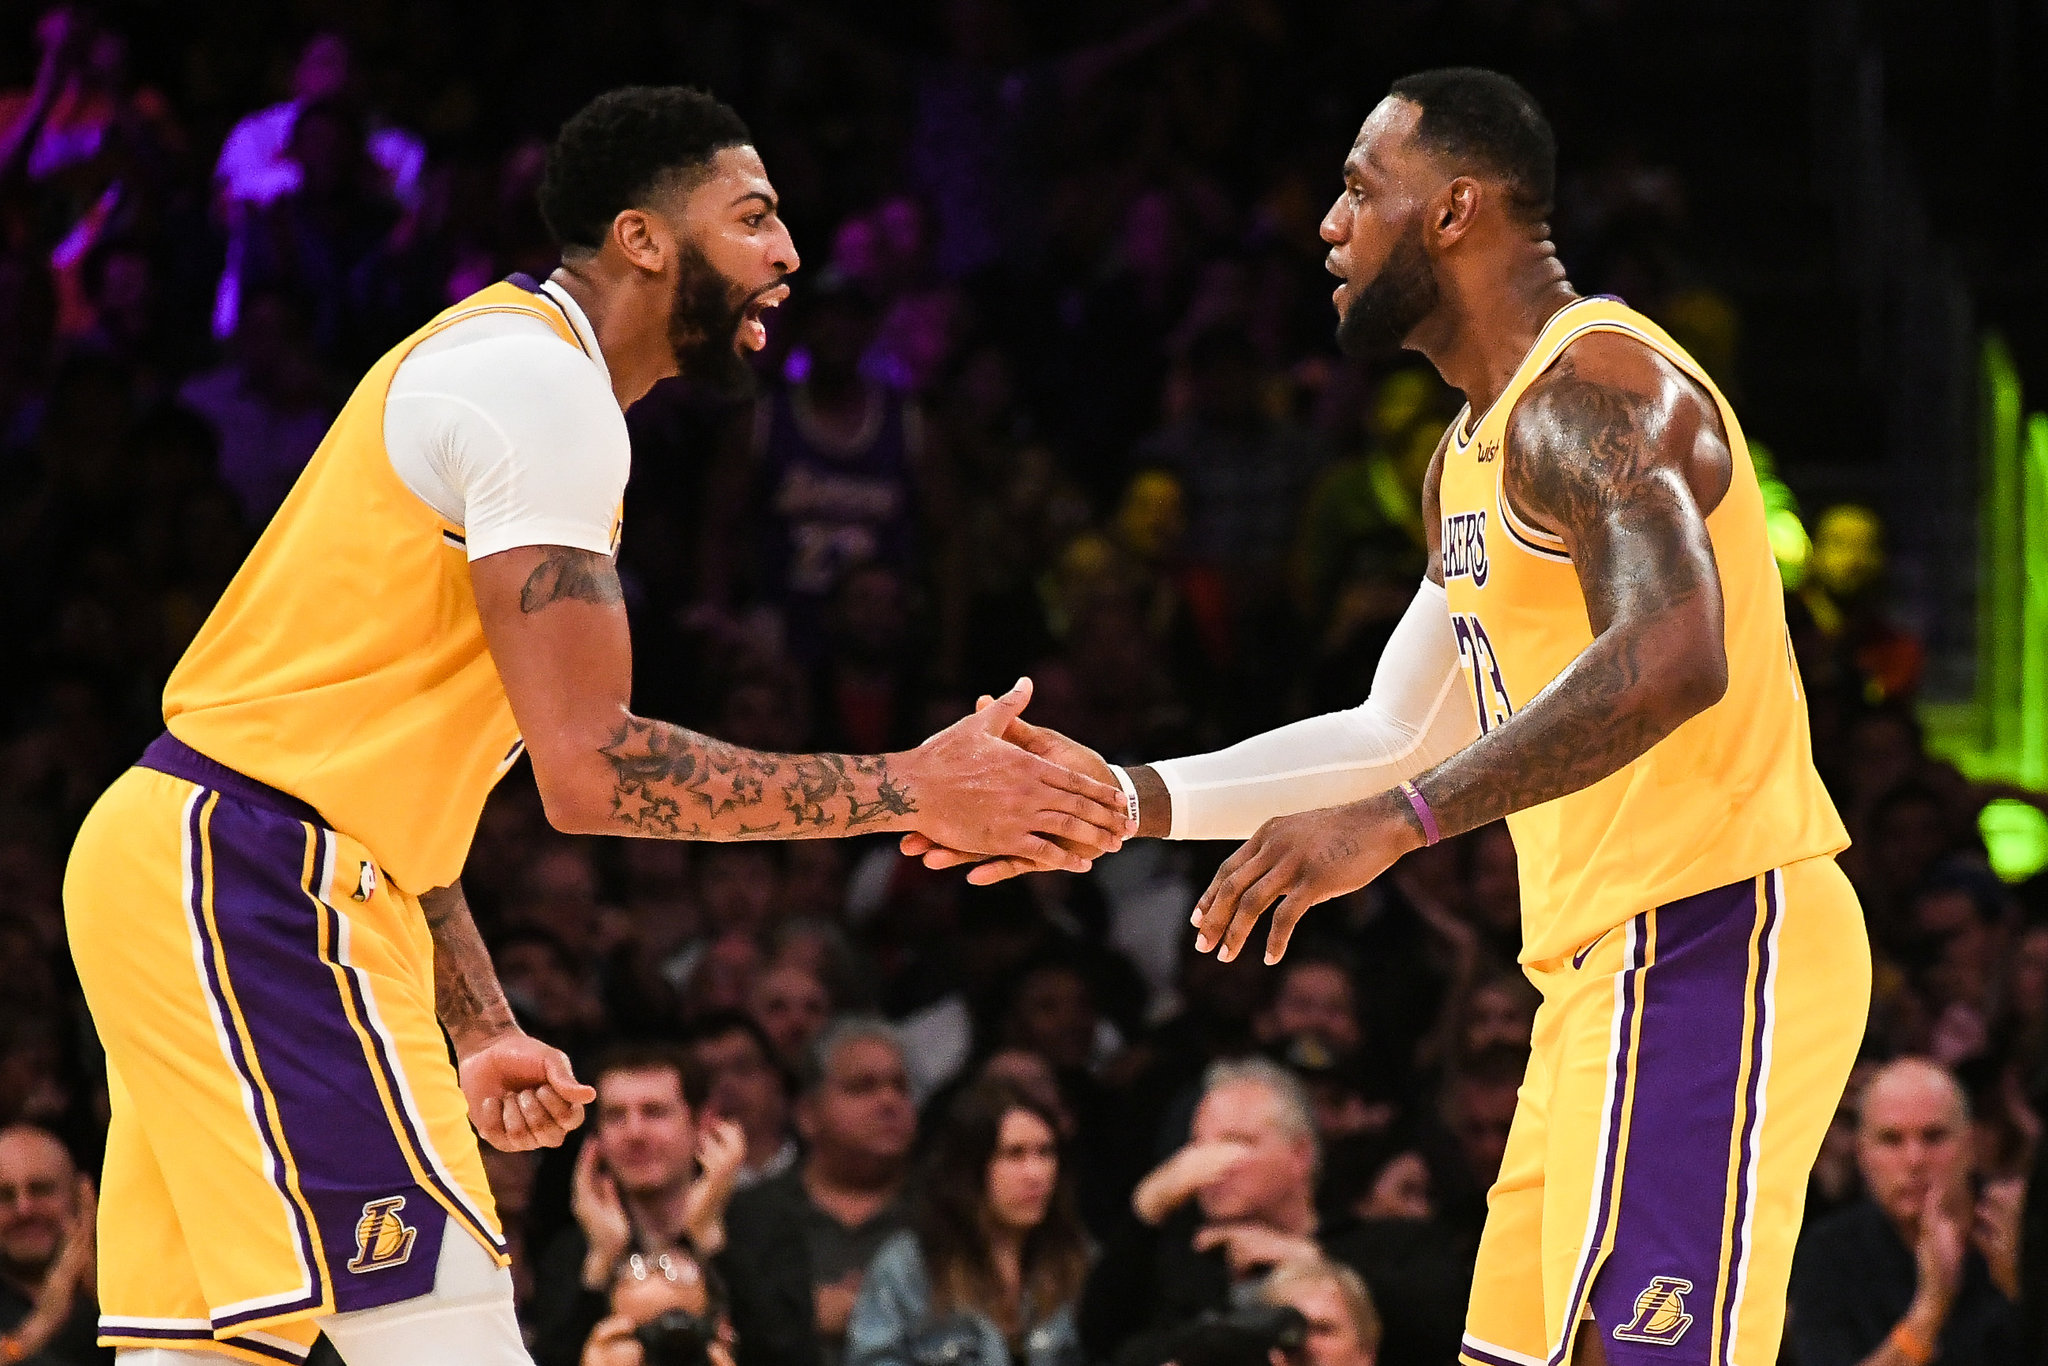 HLV của Lakers thừa nhận LeBron James đủ sức đấu play-in - Ảnh 1